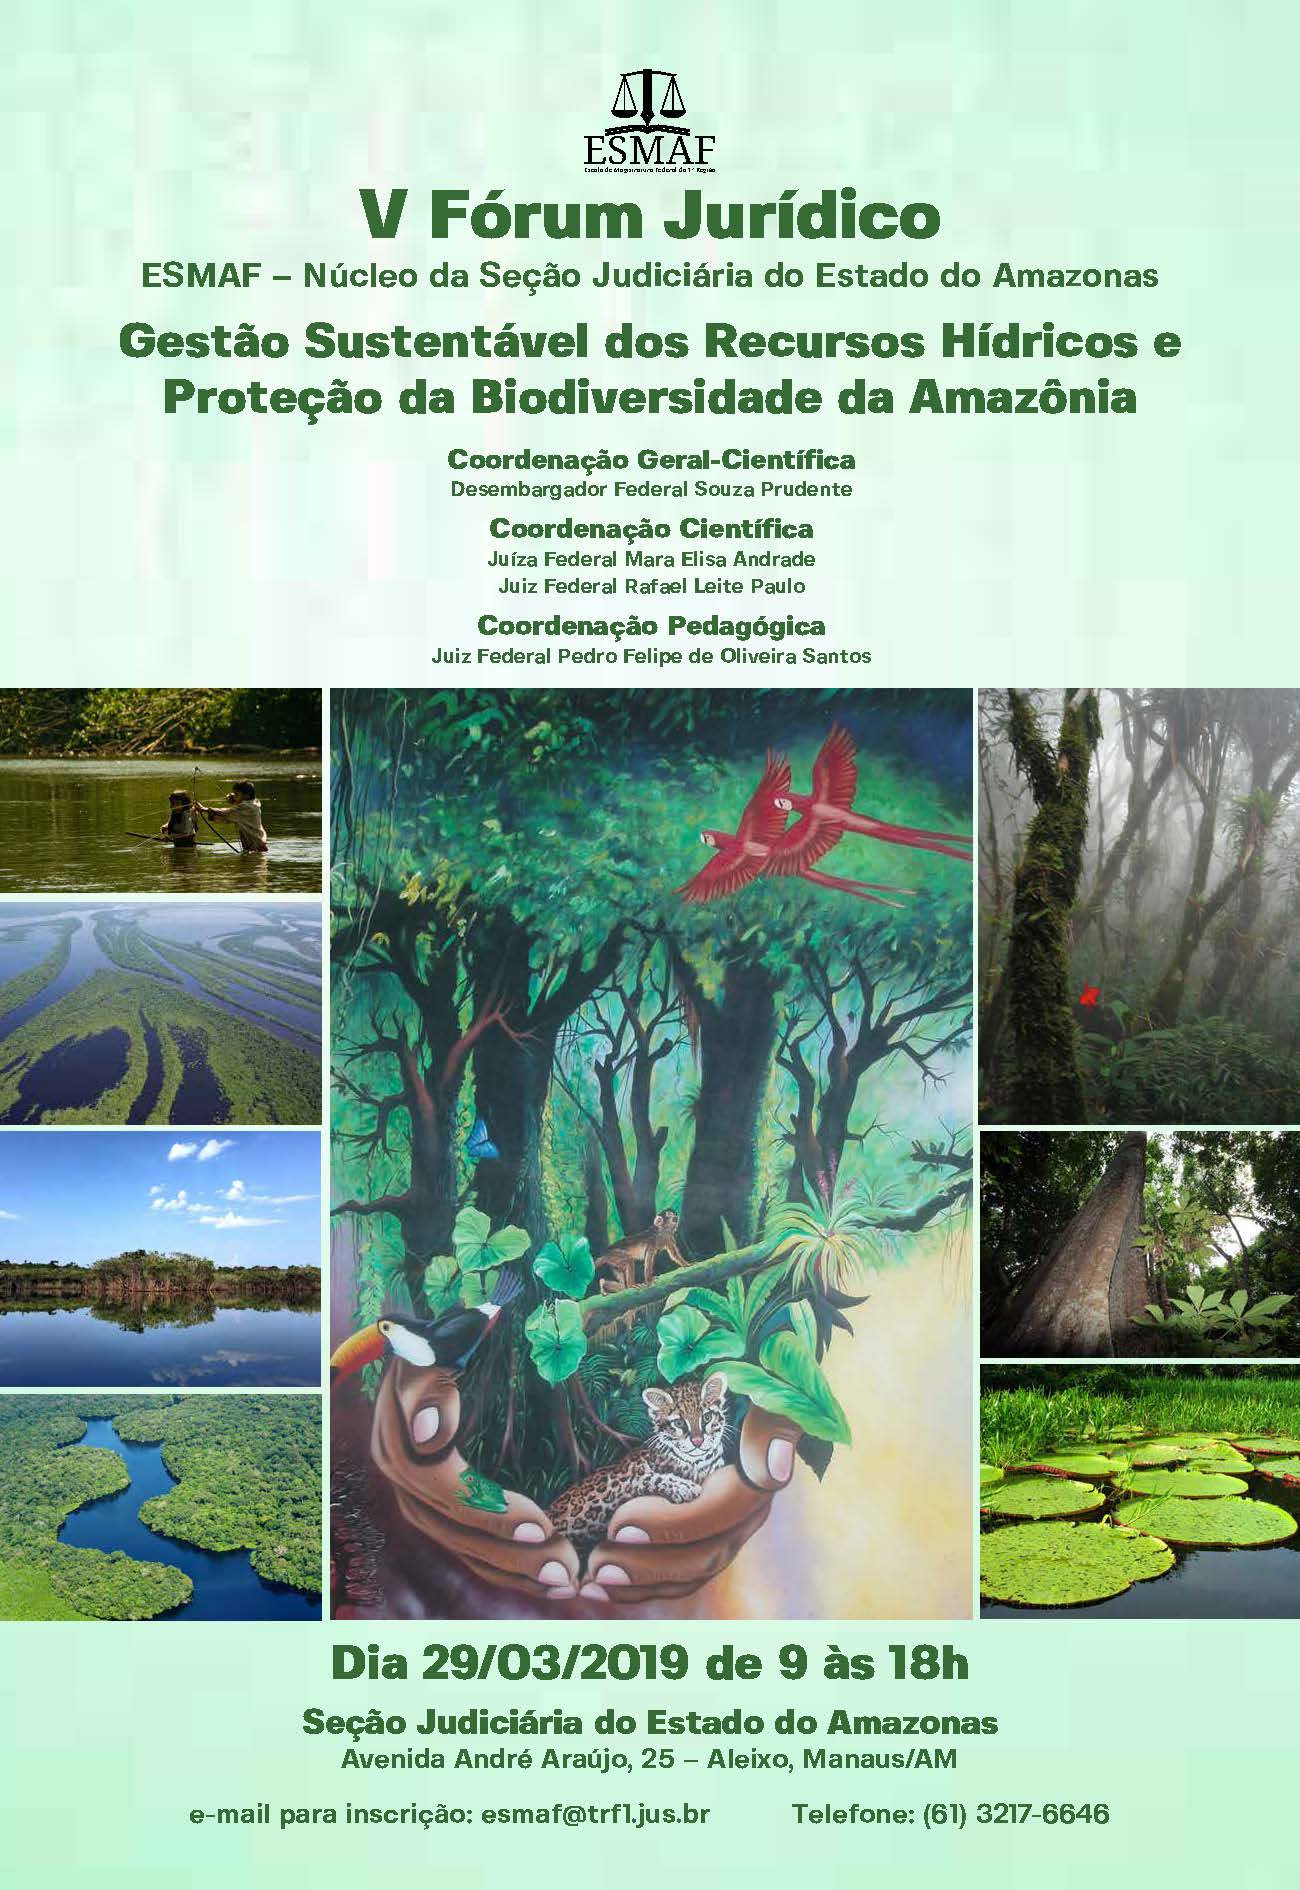 INSTITUCIONAL: Esmaf realiza V Fórum Jurídico em Manaus para debater recursos hídricos e biodiversidade da Amazônia